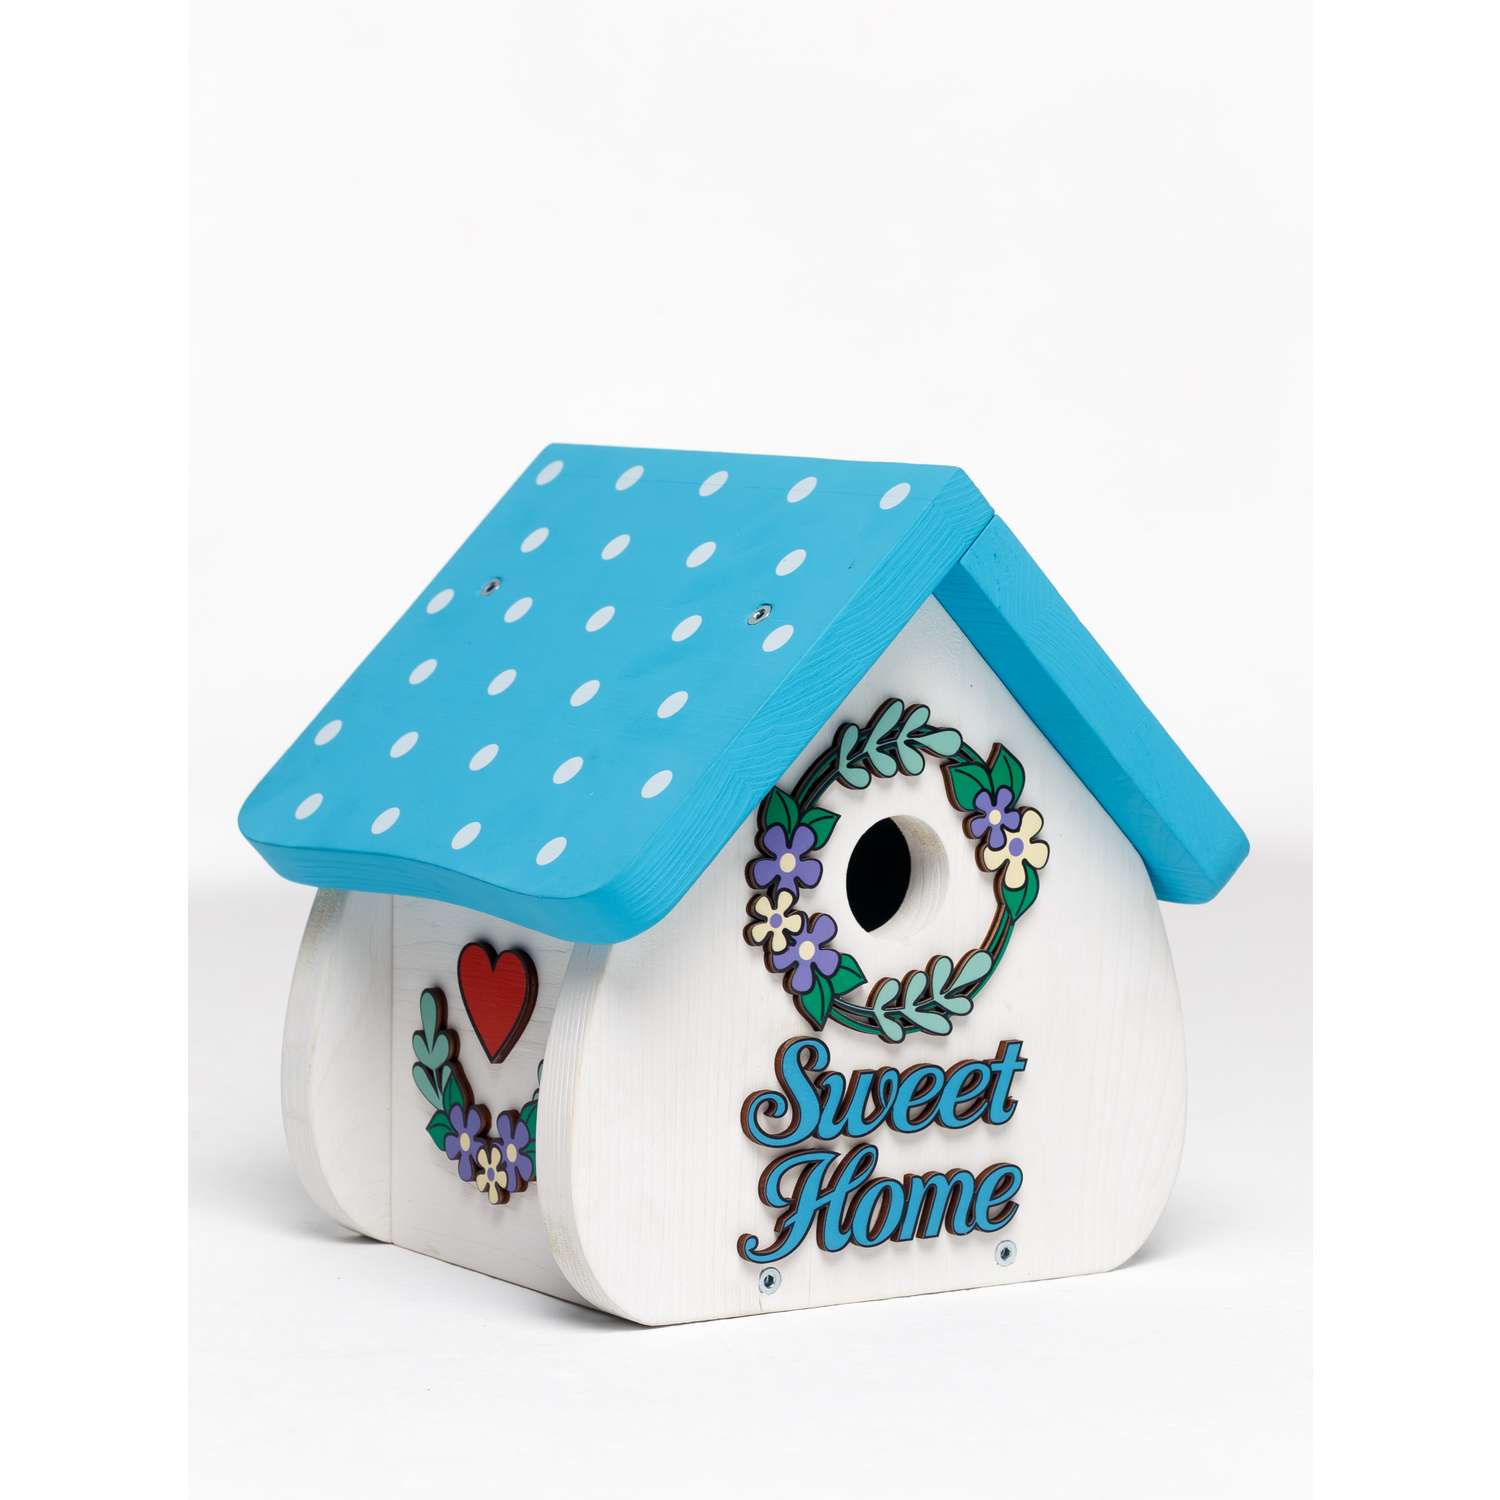 Скворечник Sweet home WOODING design набор с красками - фото 5